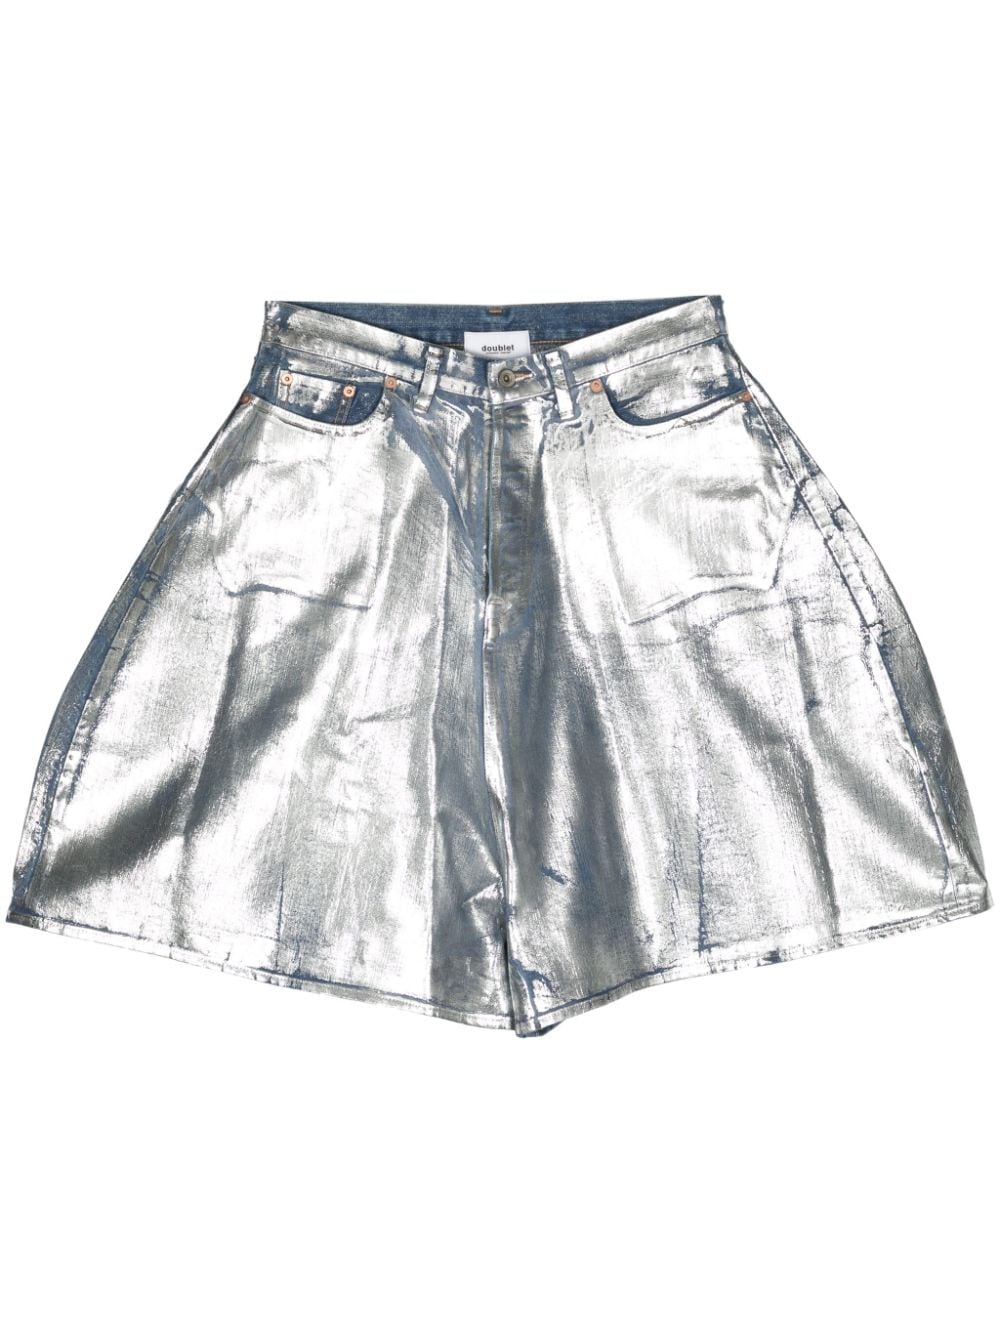 metallic-finish denim shorts